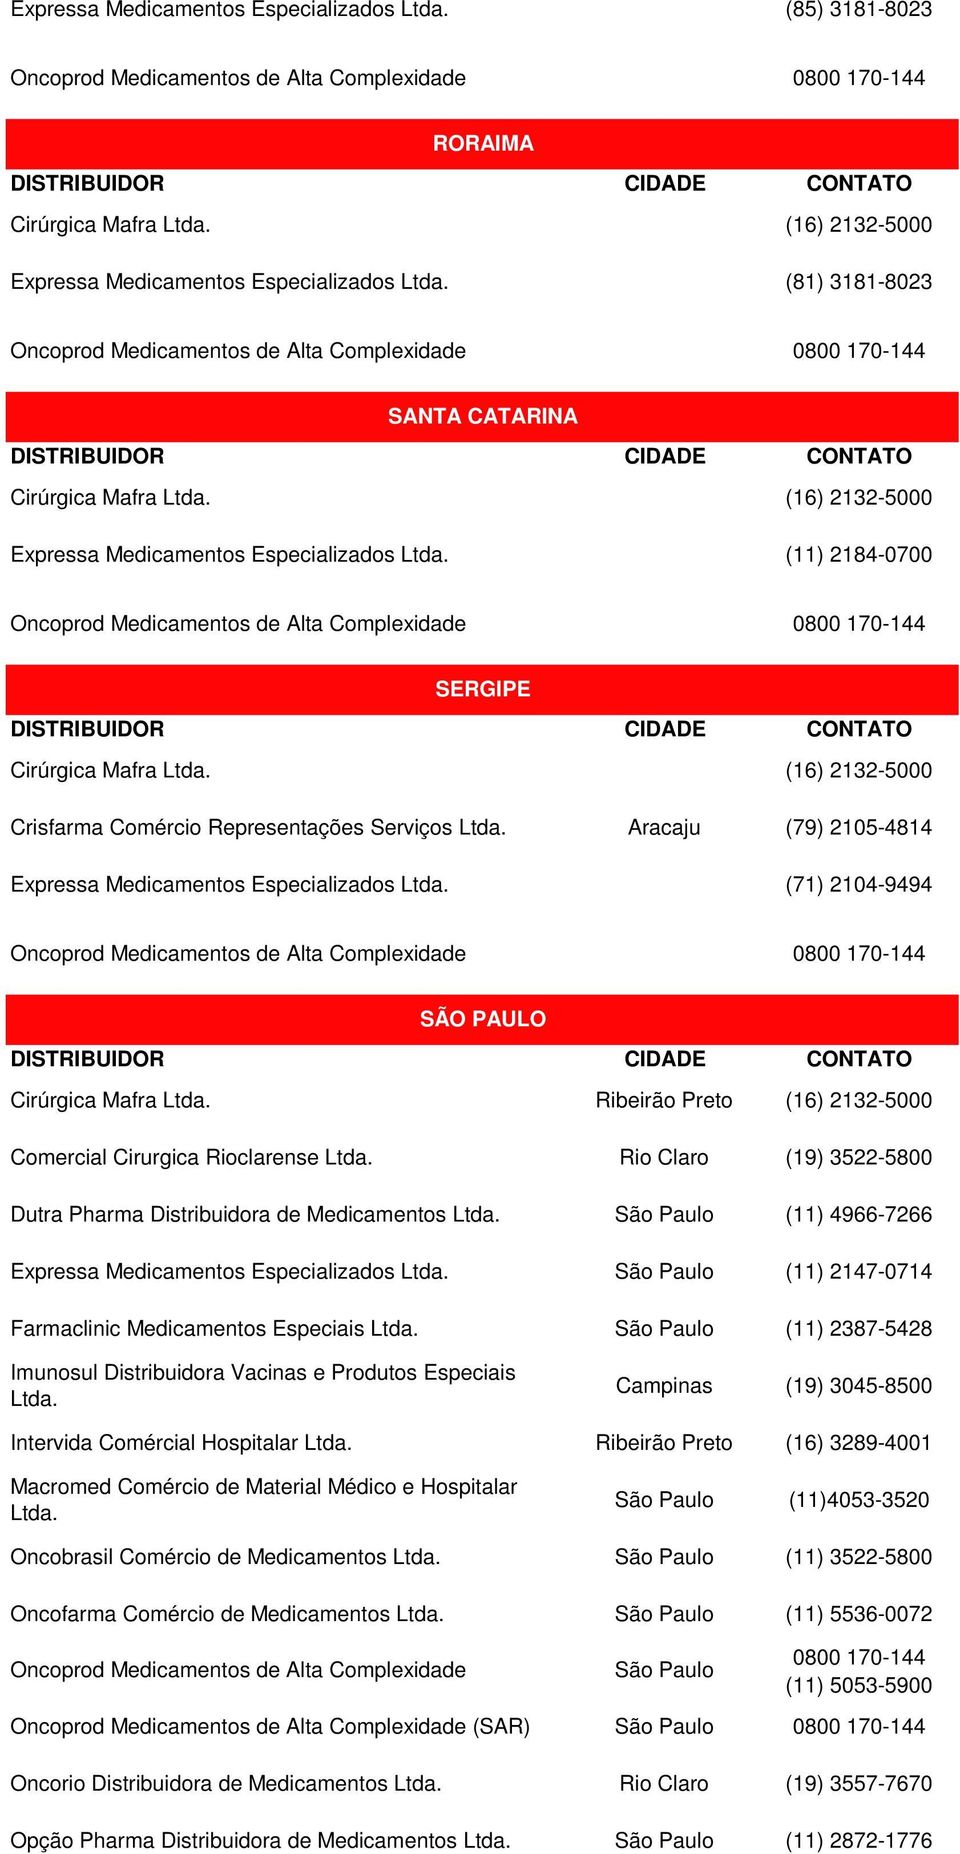 Oncobrasil Comércio de Medicamentos Oncofarma Comércio de Medicamentos (SAR) Oncorio Distribuidora de Medicamentos Opção Pharma Distribuidora de Medicamentos Ribeirão Preto Rio Claro Campinas